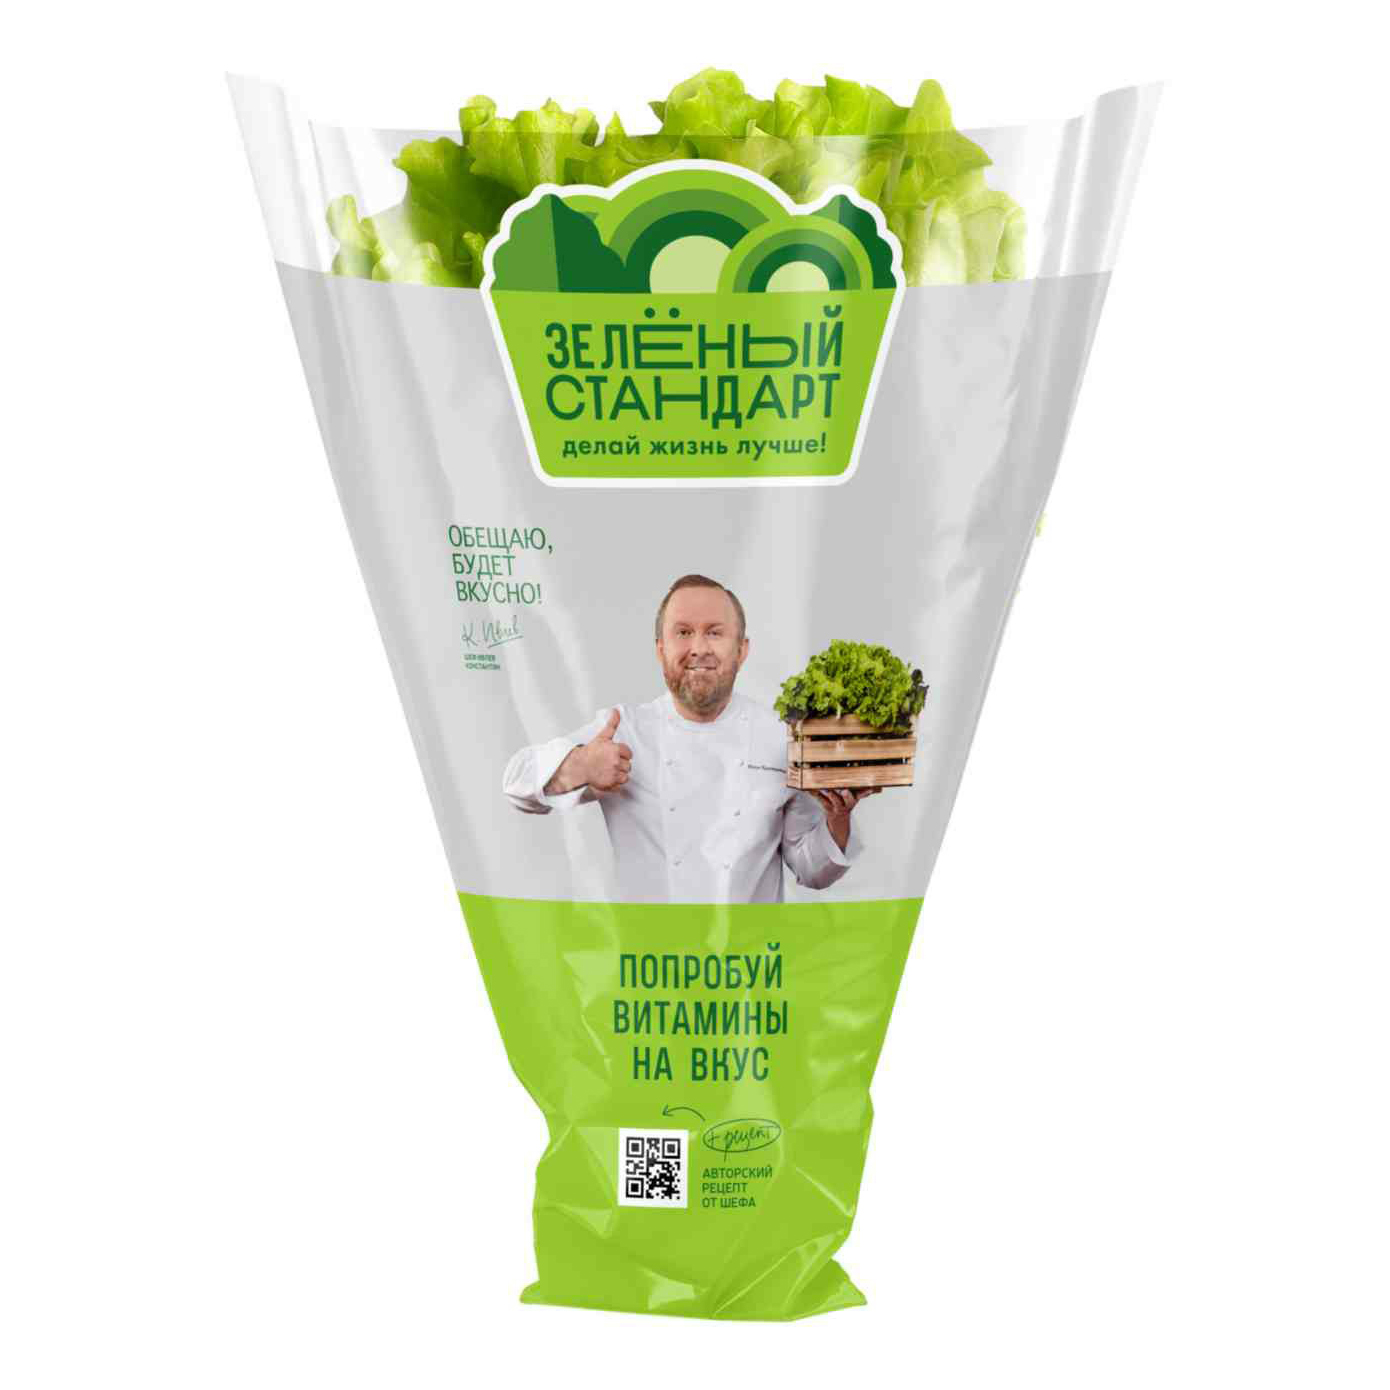 Салат листовой Зеленый стандарт в горшочке 110 г